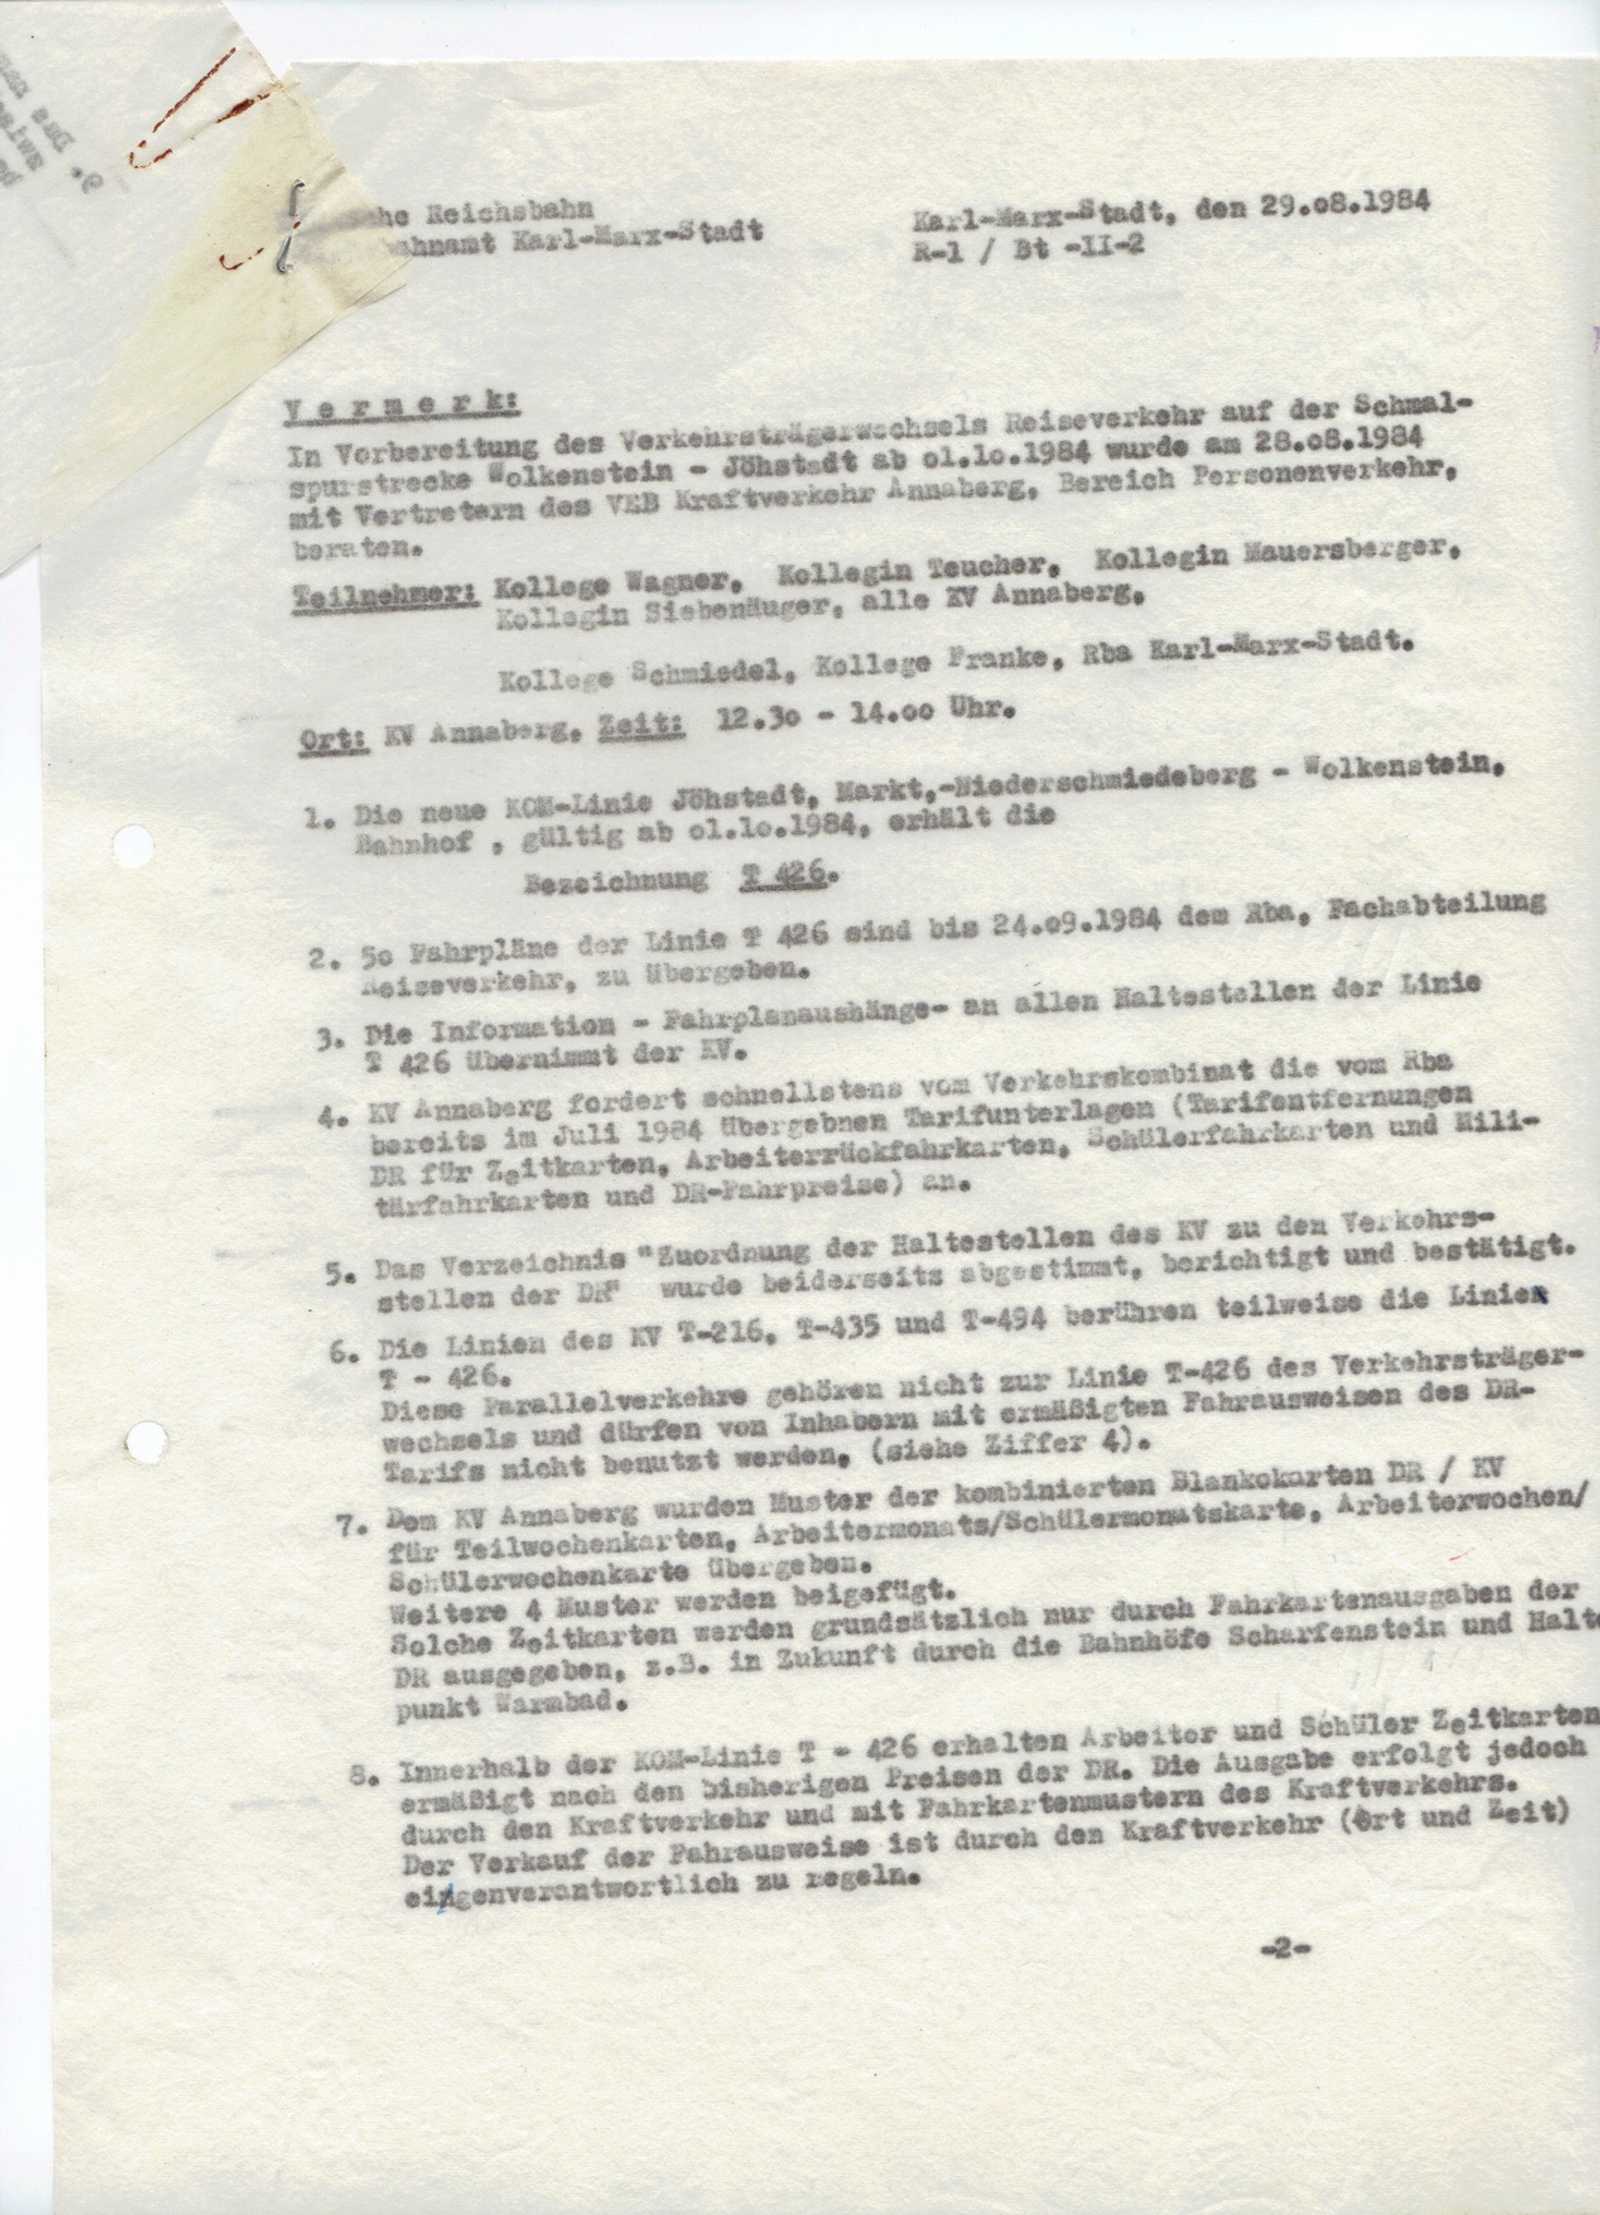 Ausschnitt aus einem Protokoll zu den Abstimmungen zum Verkehrsträgerwechsel vom 29.8.1984